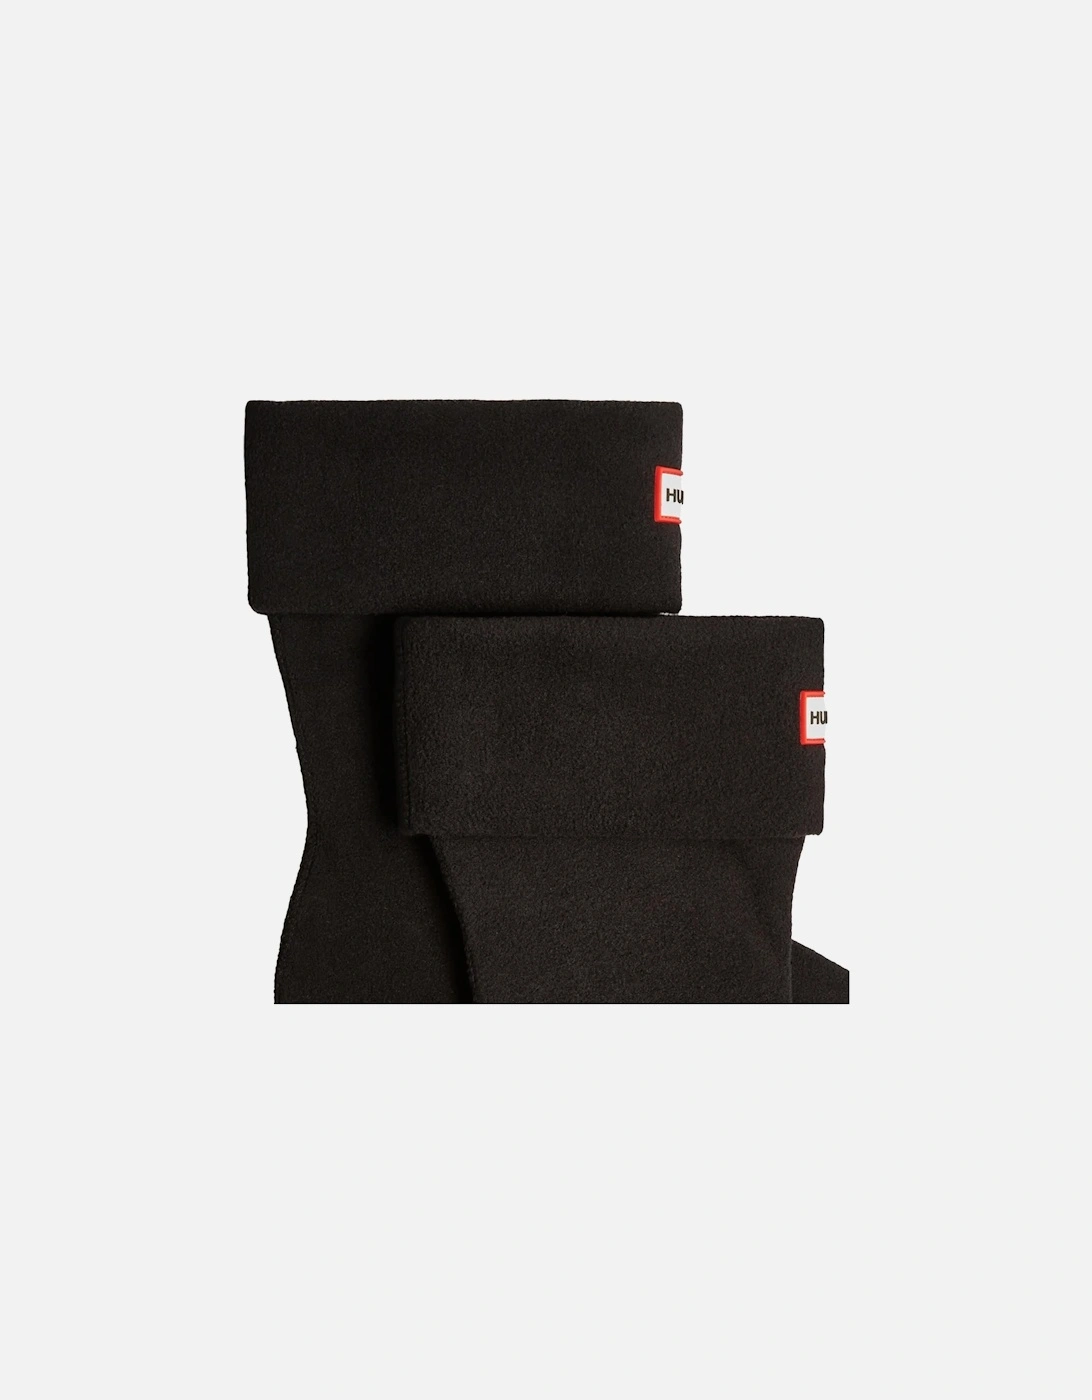 Womens Recycled Fleece Short Socks (Black)